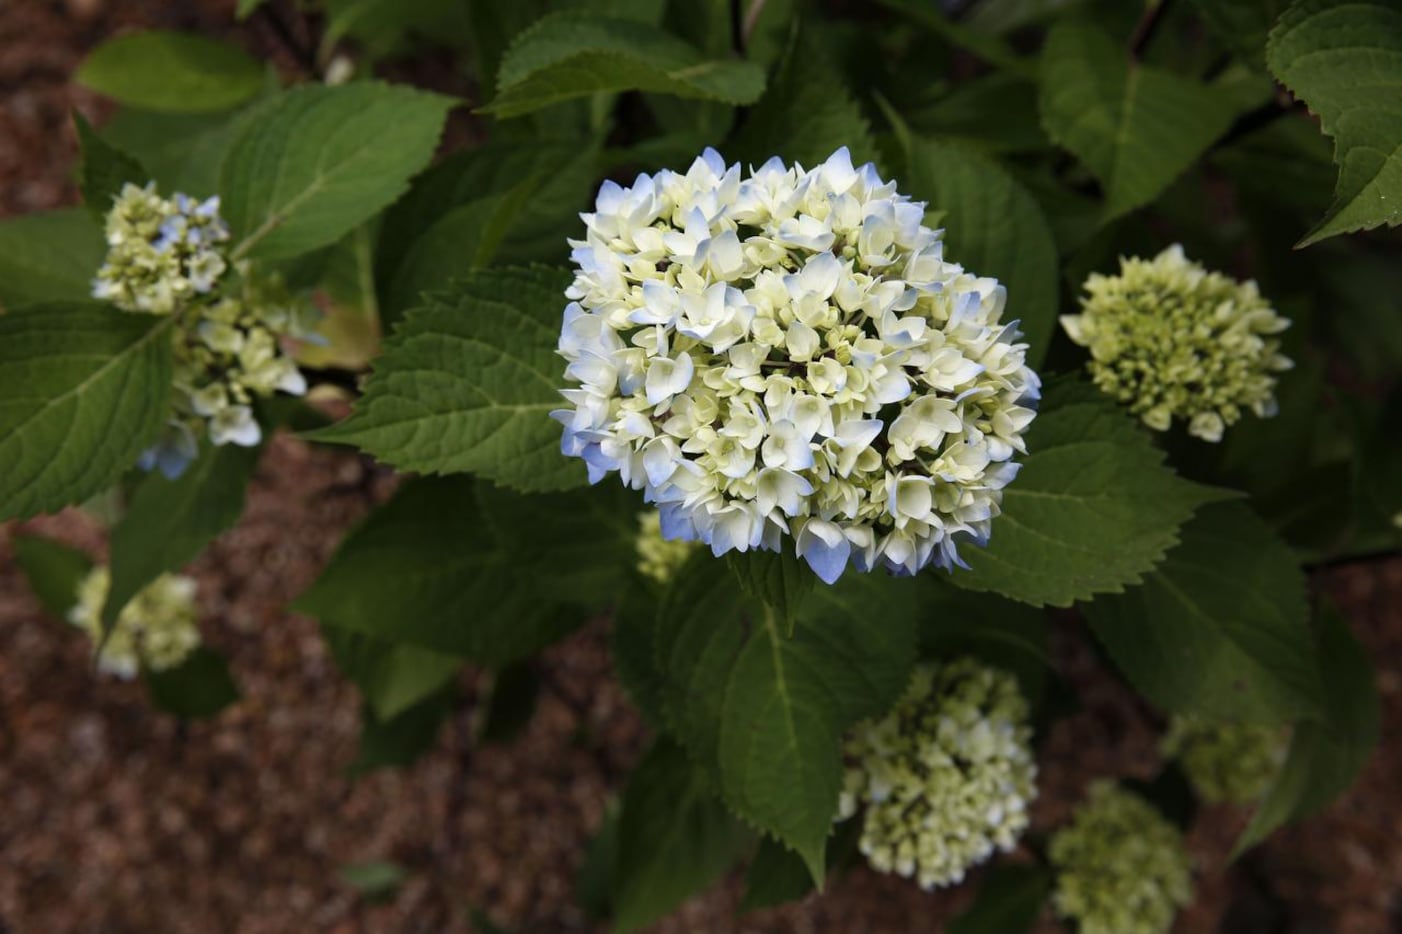 A Blue Enchantress Hydrangea macrophylla at Mariana Greene's home